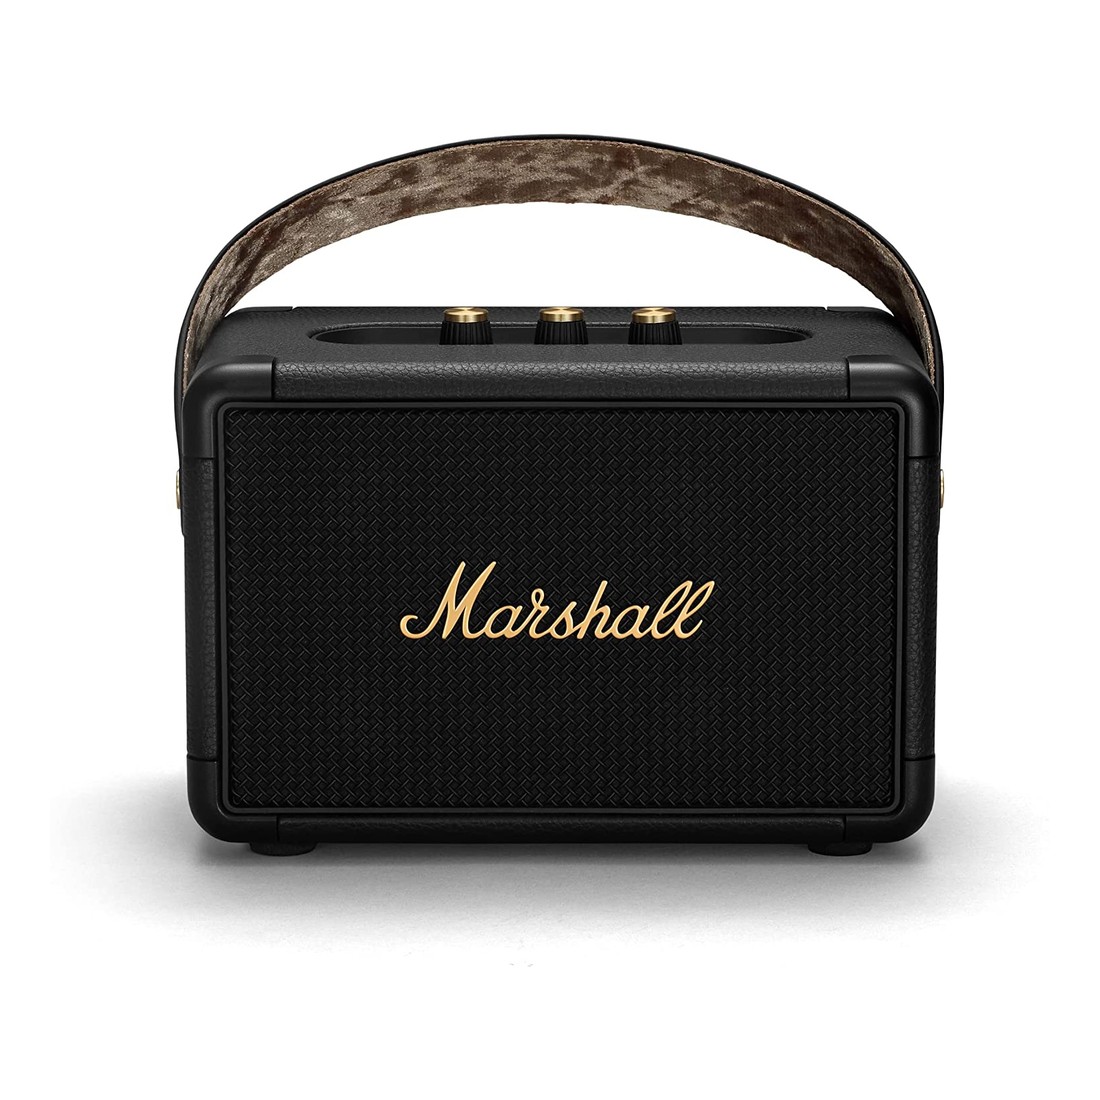 Marshall Kilburn II Black And Brass Portable Bluetooth Speaker